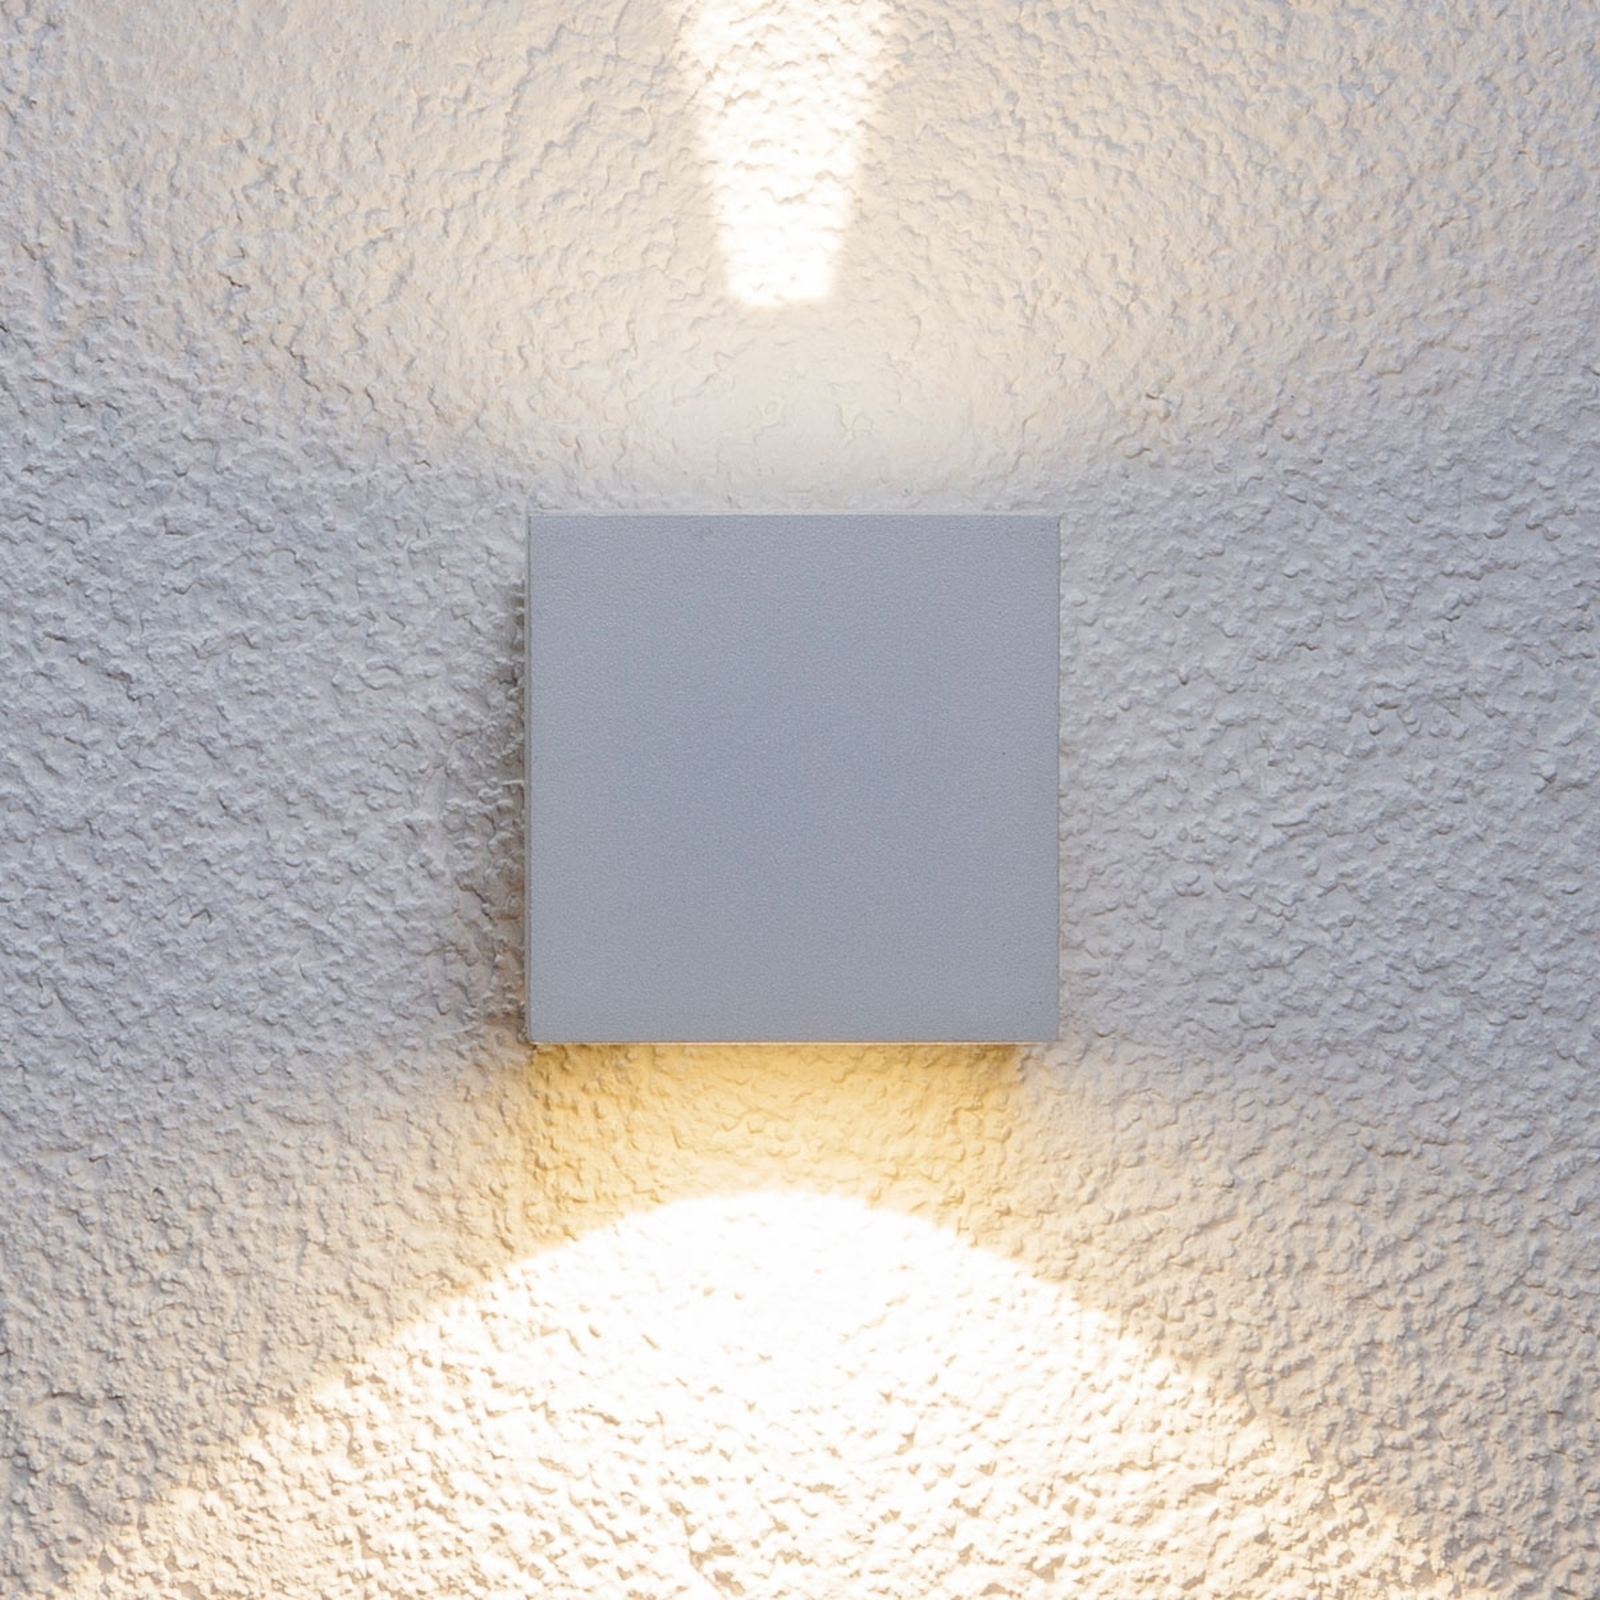 Fehér LED kültéri fali lámpa Jarno, kocka alakú